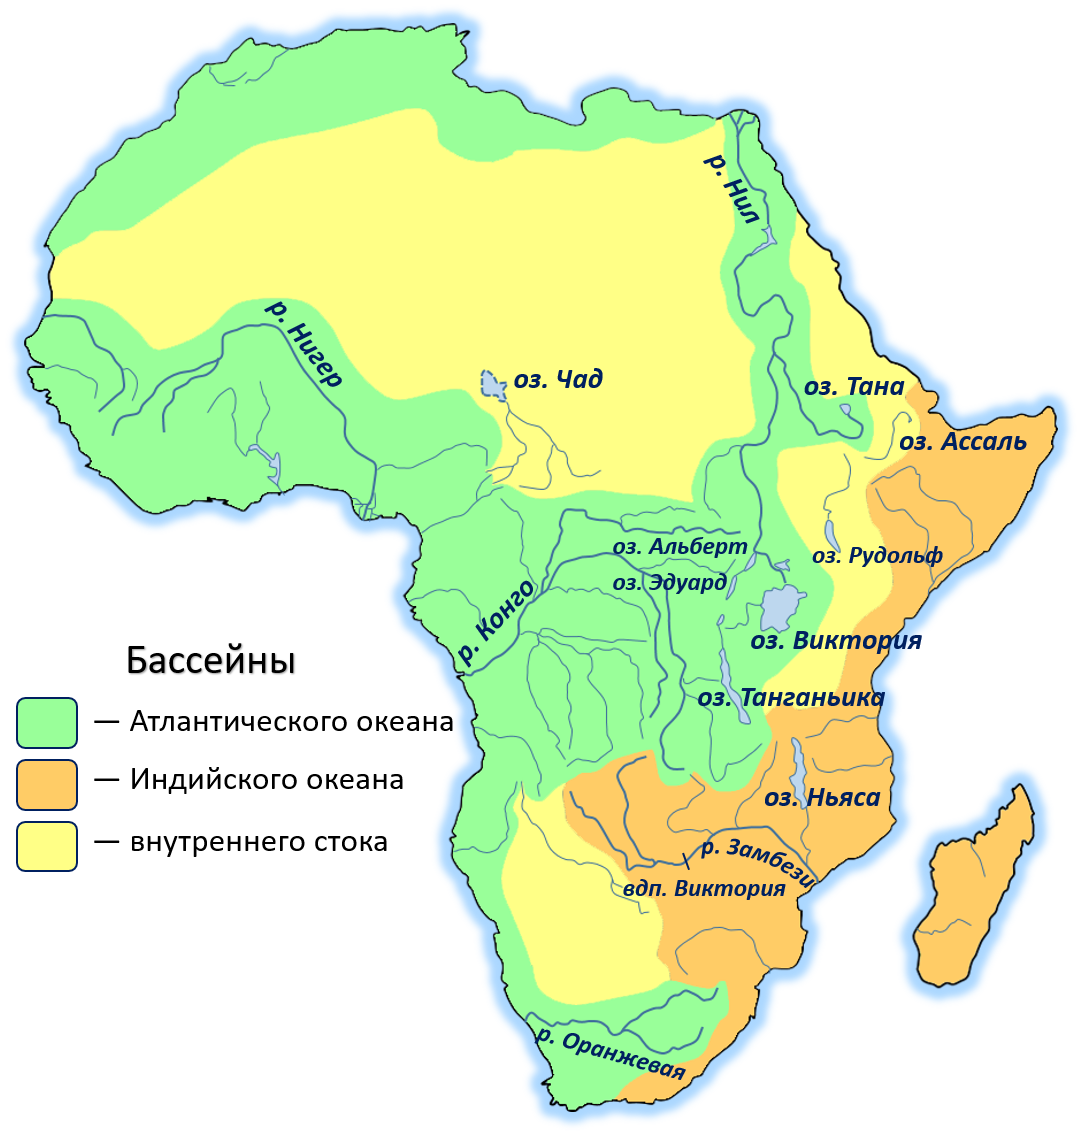 Как называется африканская река изображенная на карте. Реки Африки на карте. Реки и озера Африки на карте. Реки и озёра Африки на карте 7 класс. Основные речные бассейны Африки на контурной карте.